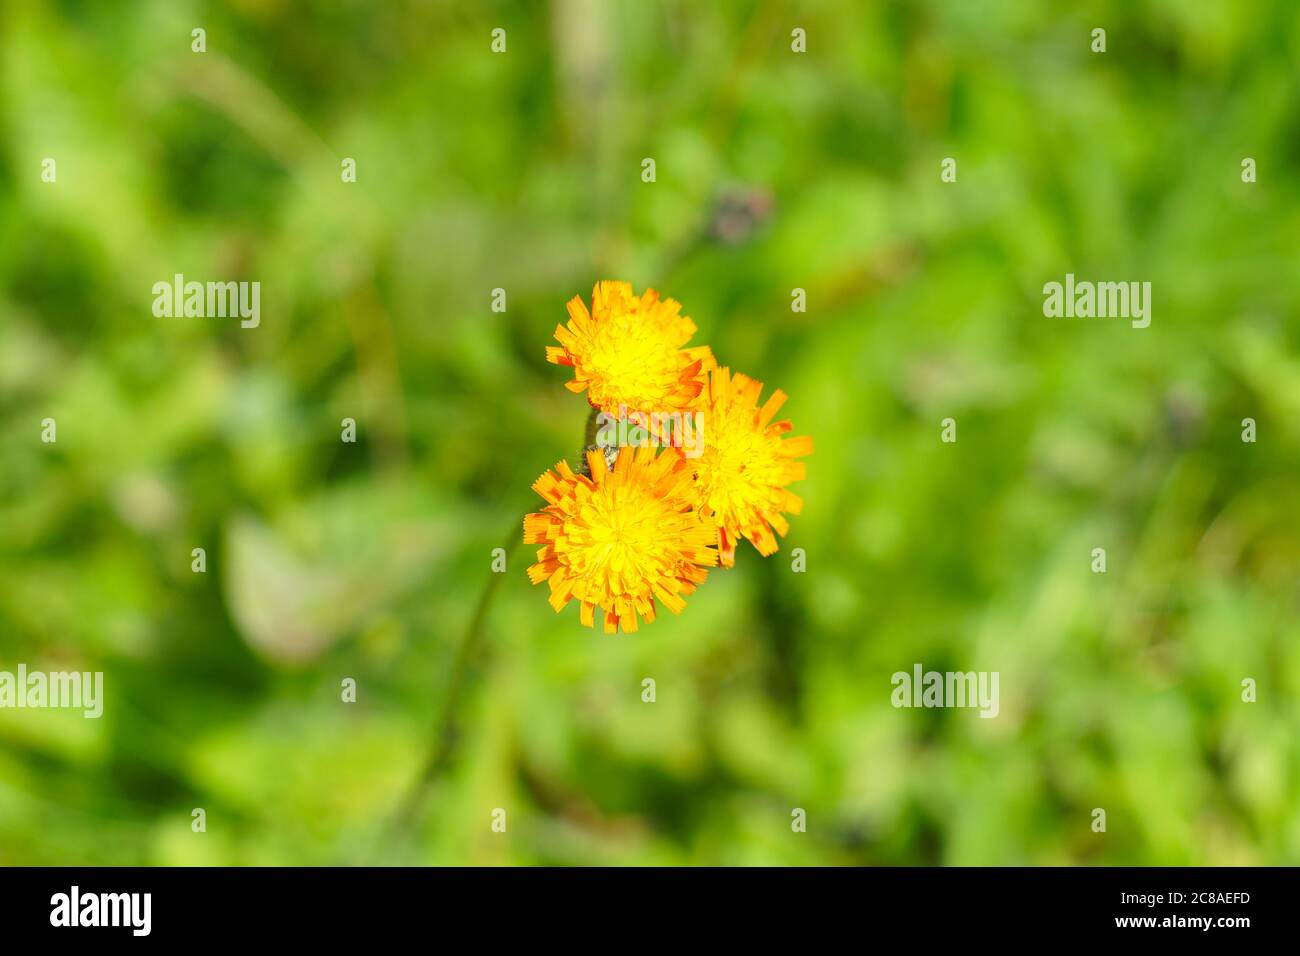 L'erba d'arancia (Pilosella aurantiaca) conosciuta anche come volpe e cubetti, un fiore selvatico arancione originario dell'Europa centrale e meridionale. Simile a dente di leone. Foto Stock